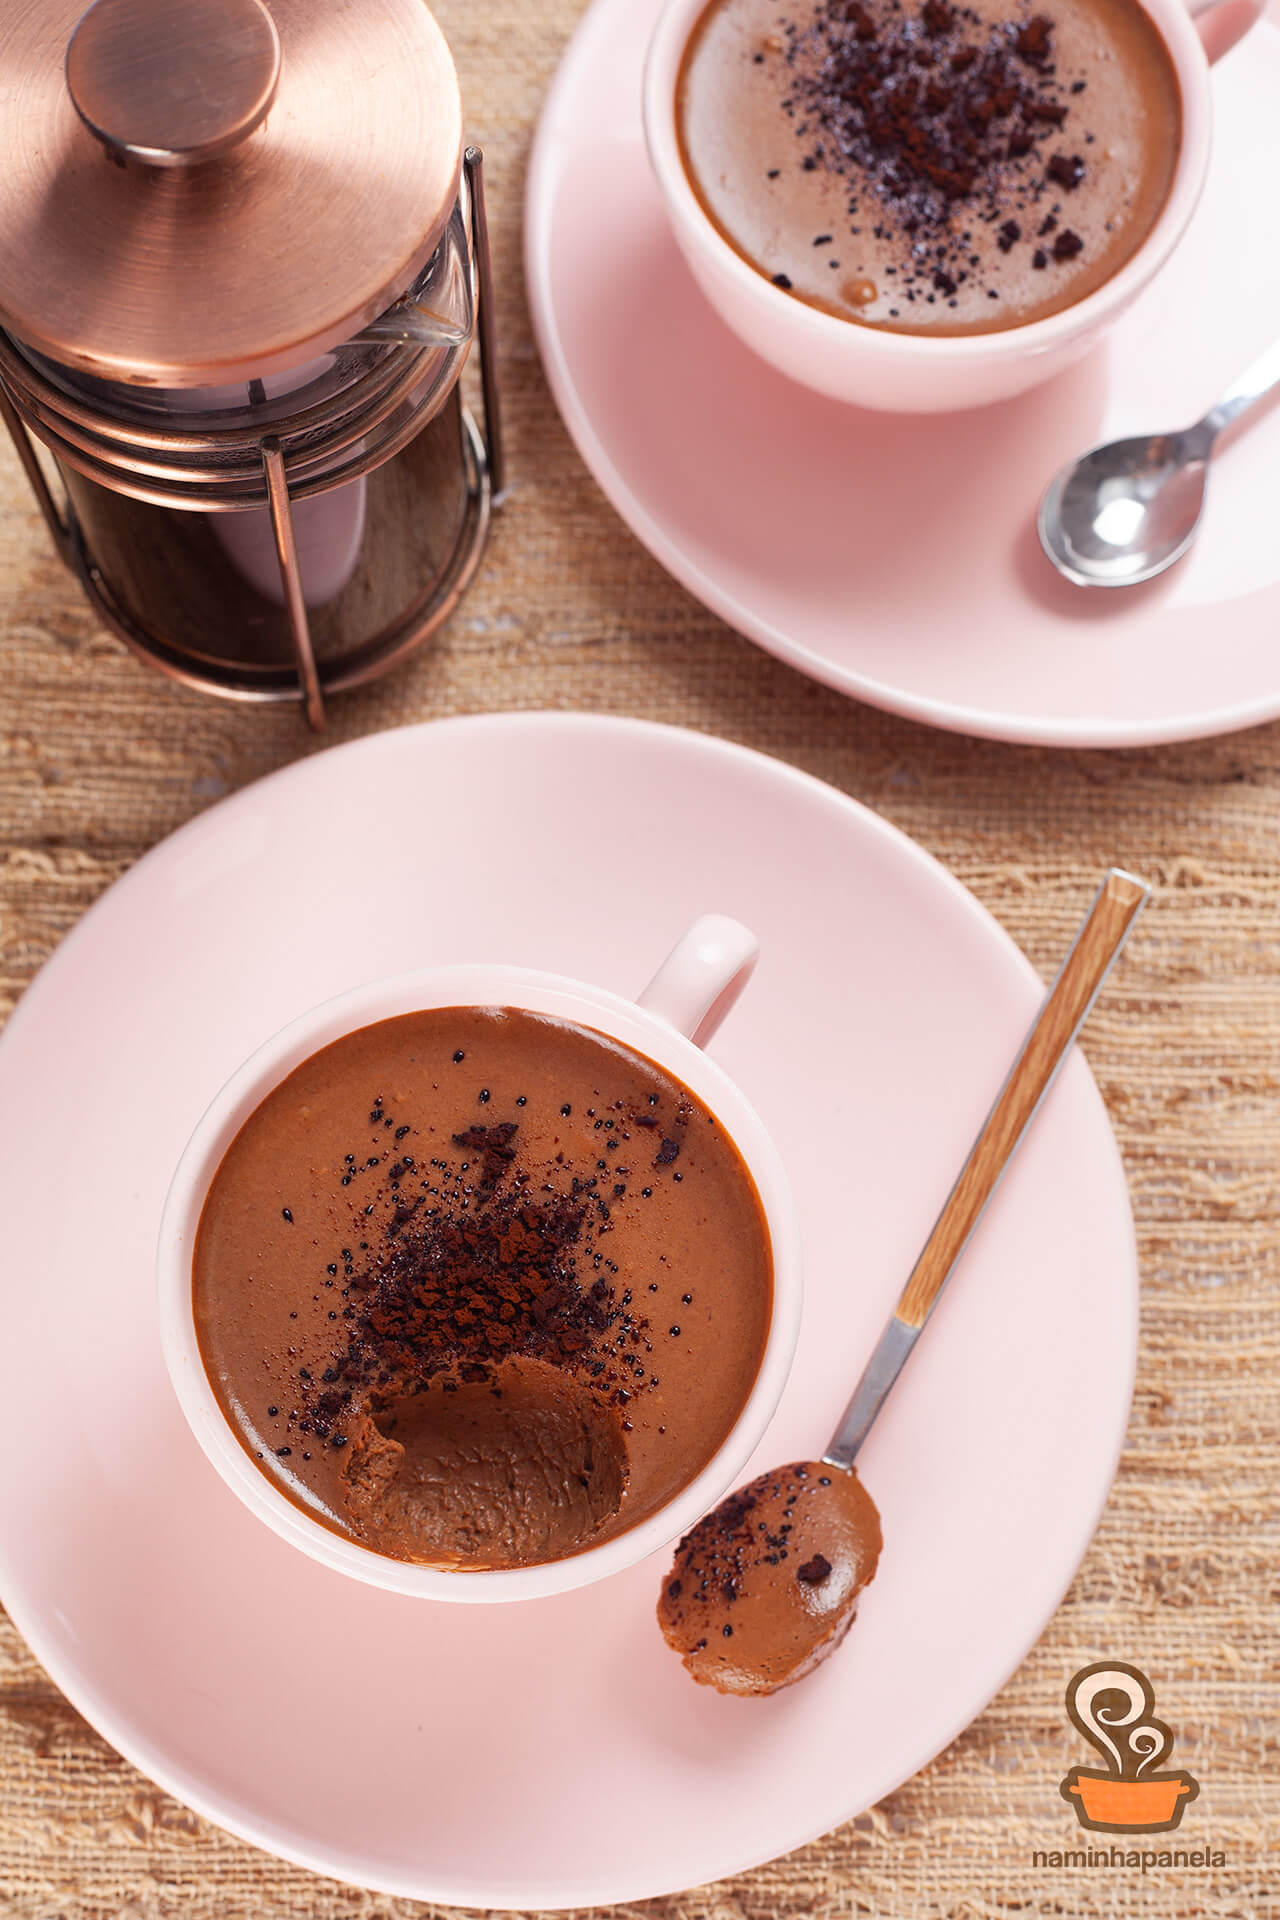 Mousse de chocolate com café - naminhapanela.com